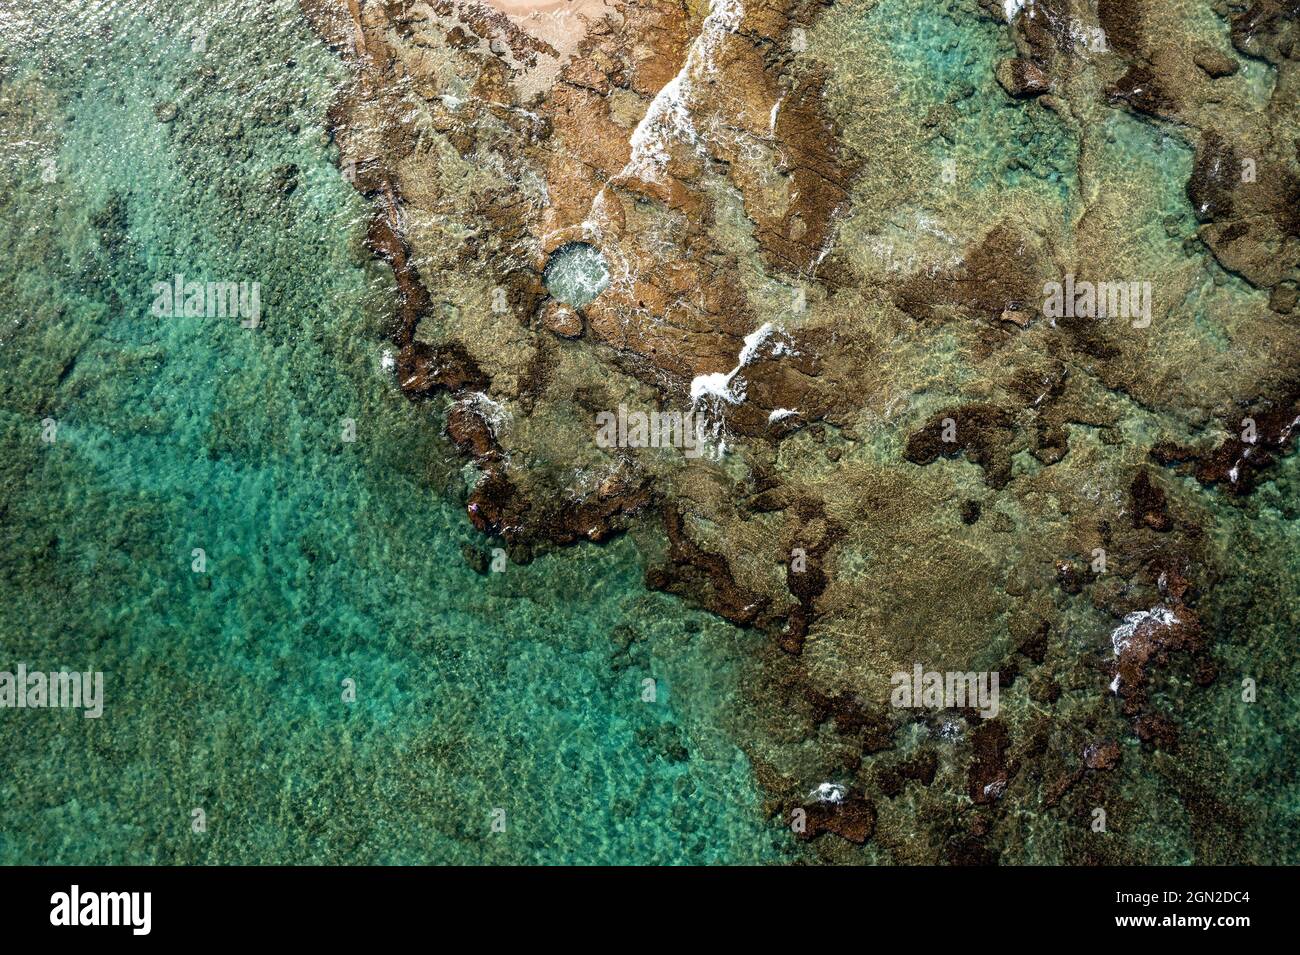 Piscine naturelle de fin de l'âge de bronze sculptée dans la roche naturelle, vue aérienne. Banque D'Images